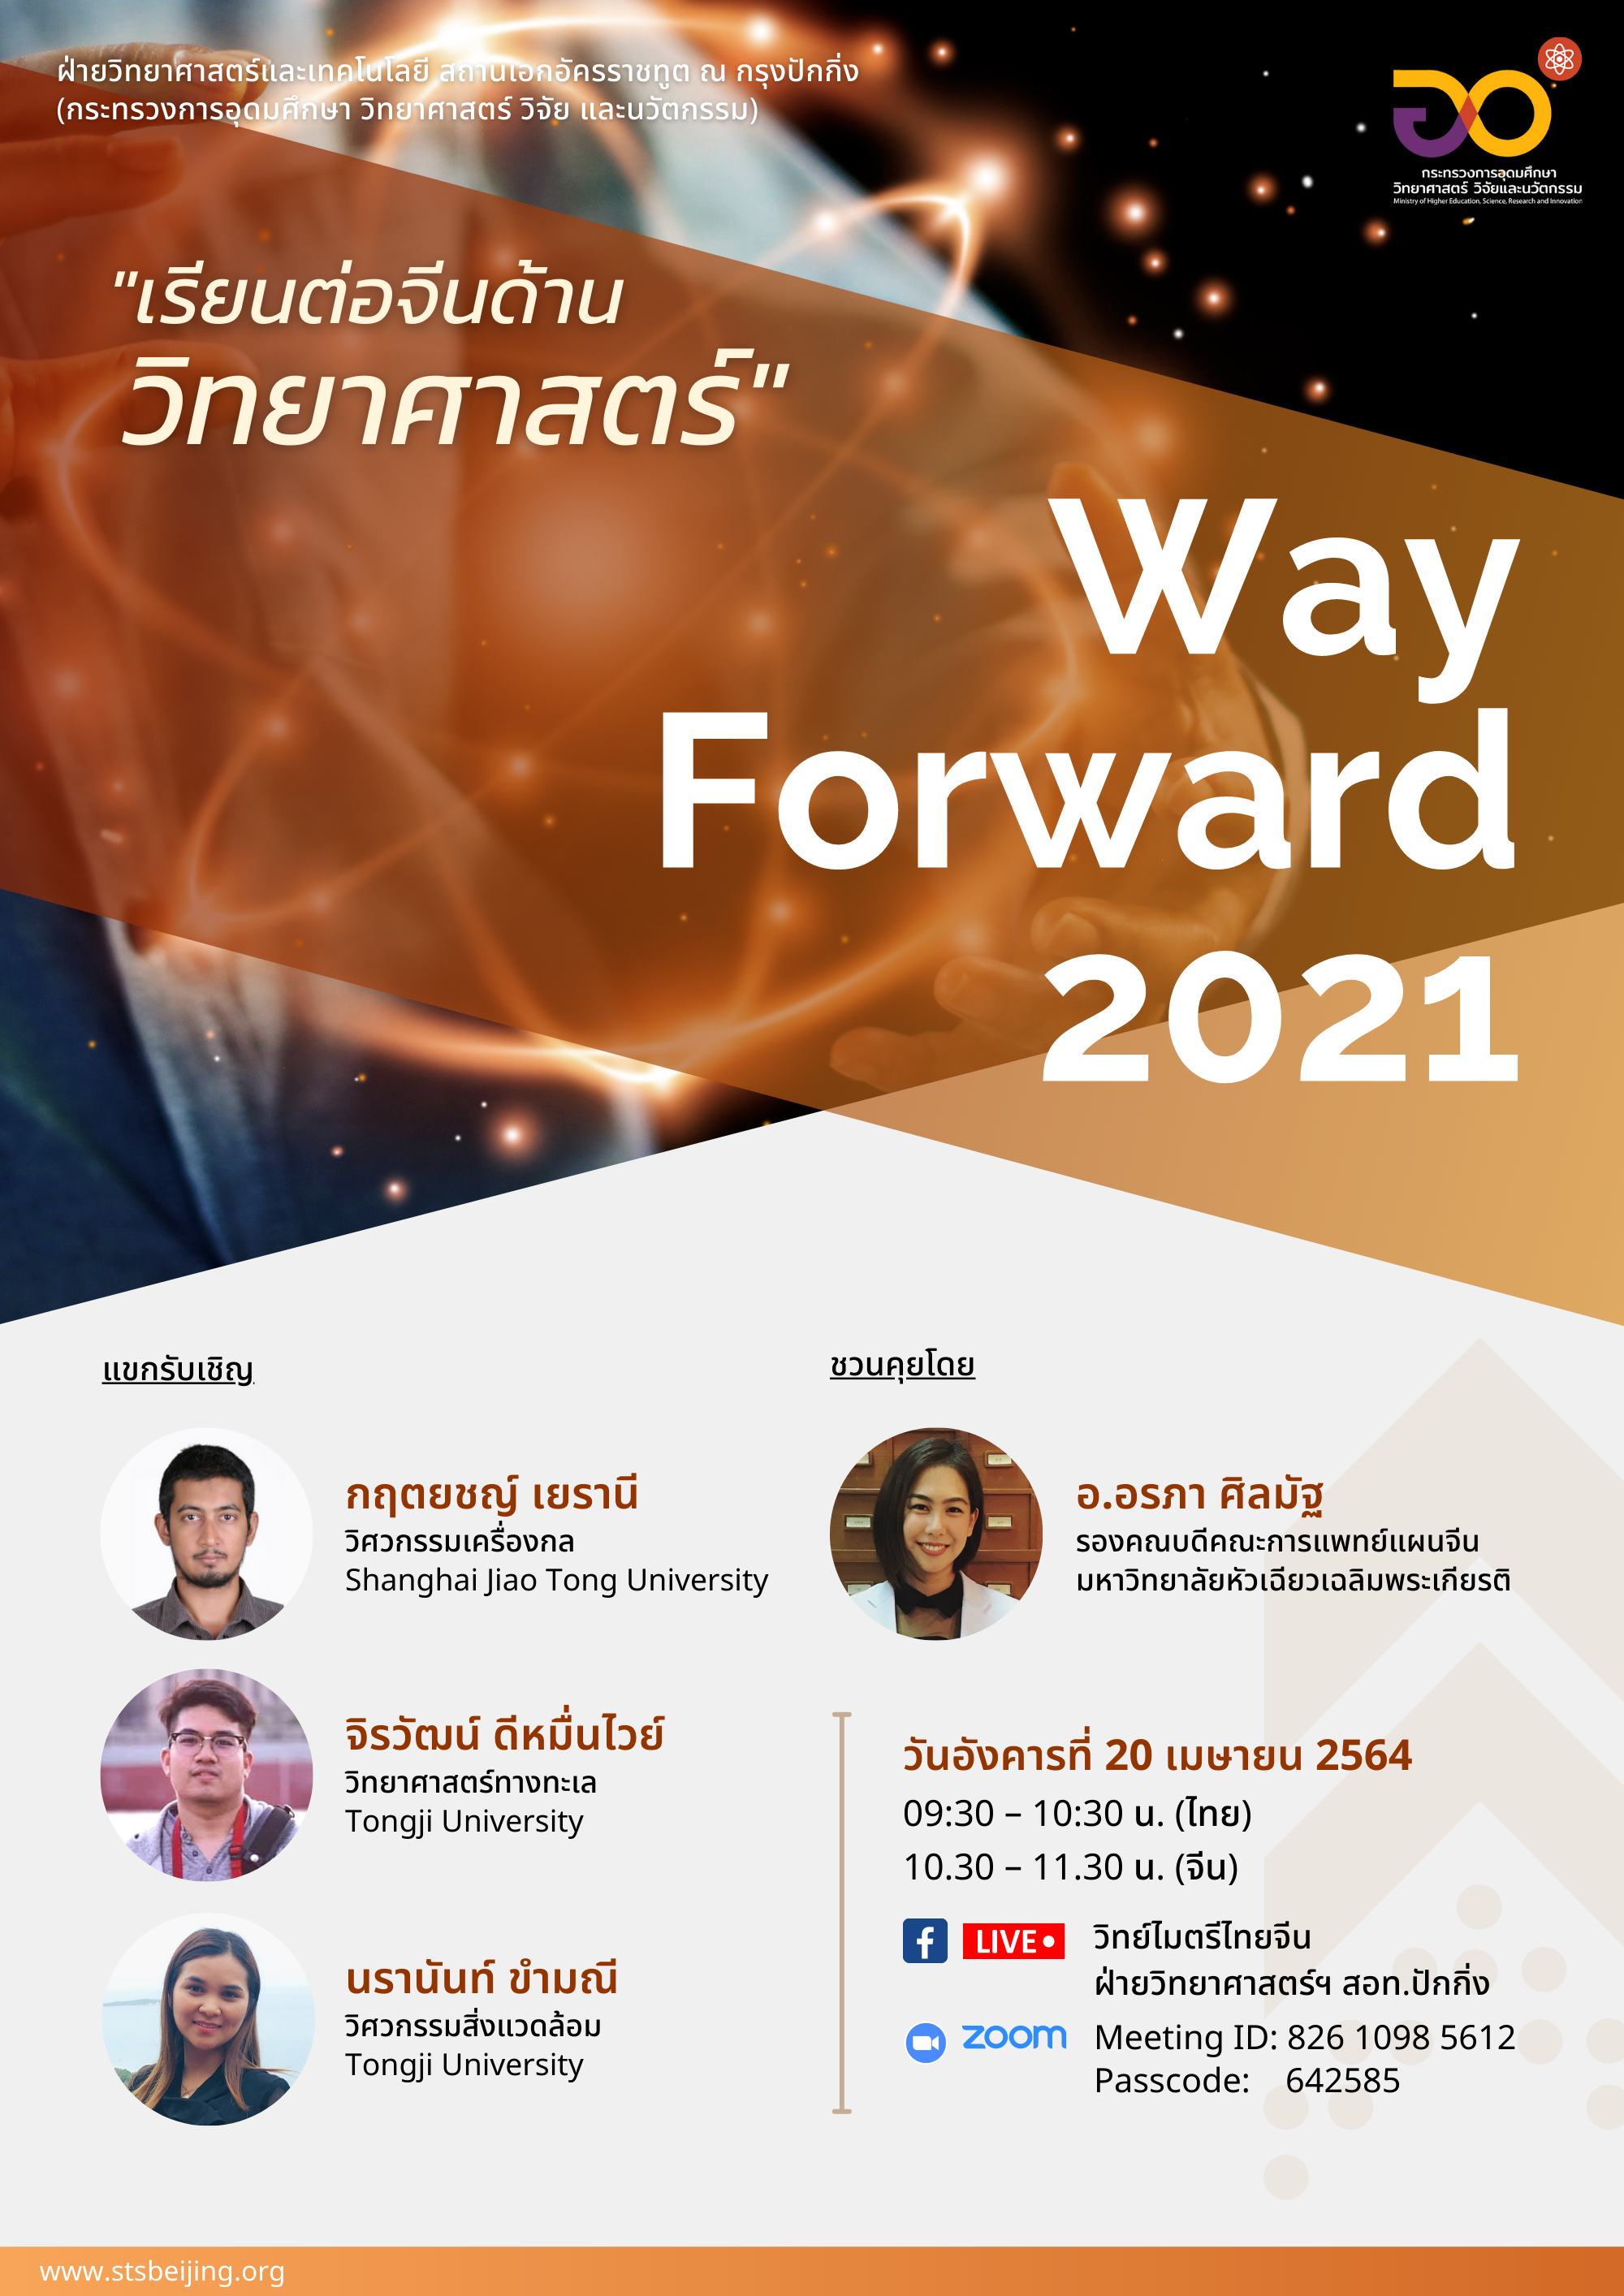 Way Forward 2021 ครั้งที่ 5 “เรียนต่อจีนด้านวิทยาศาสตร์”